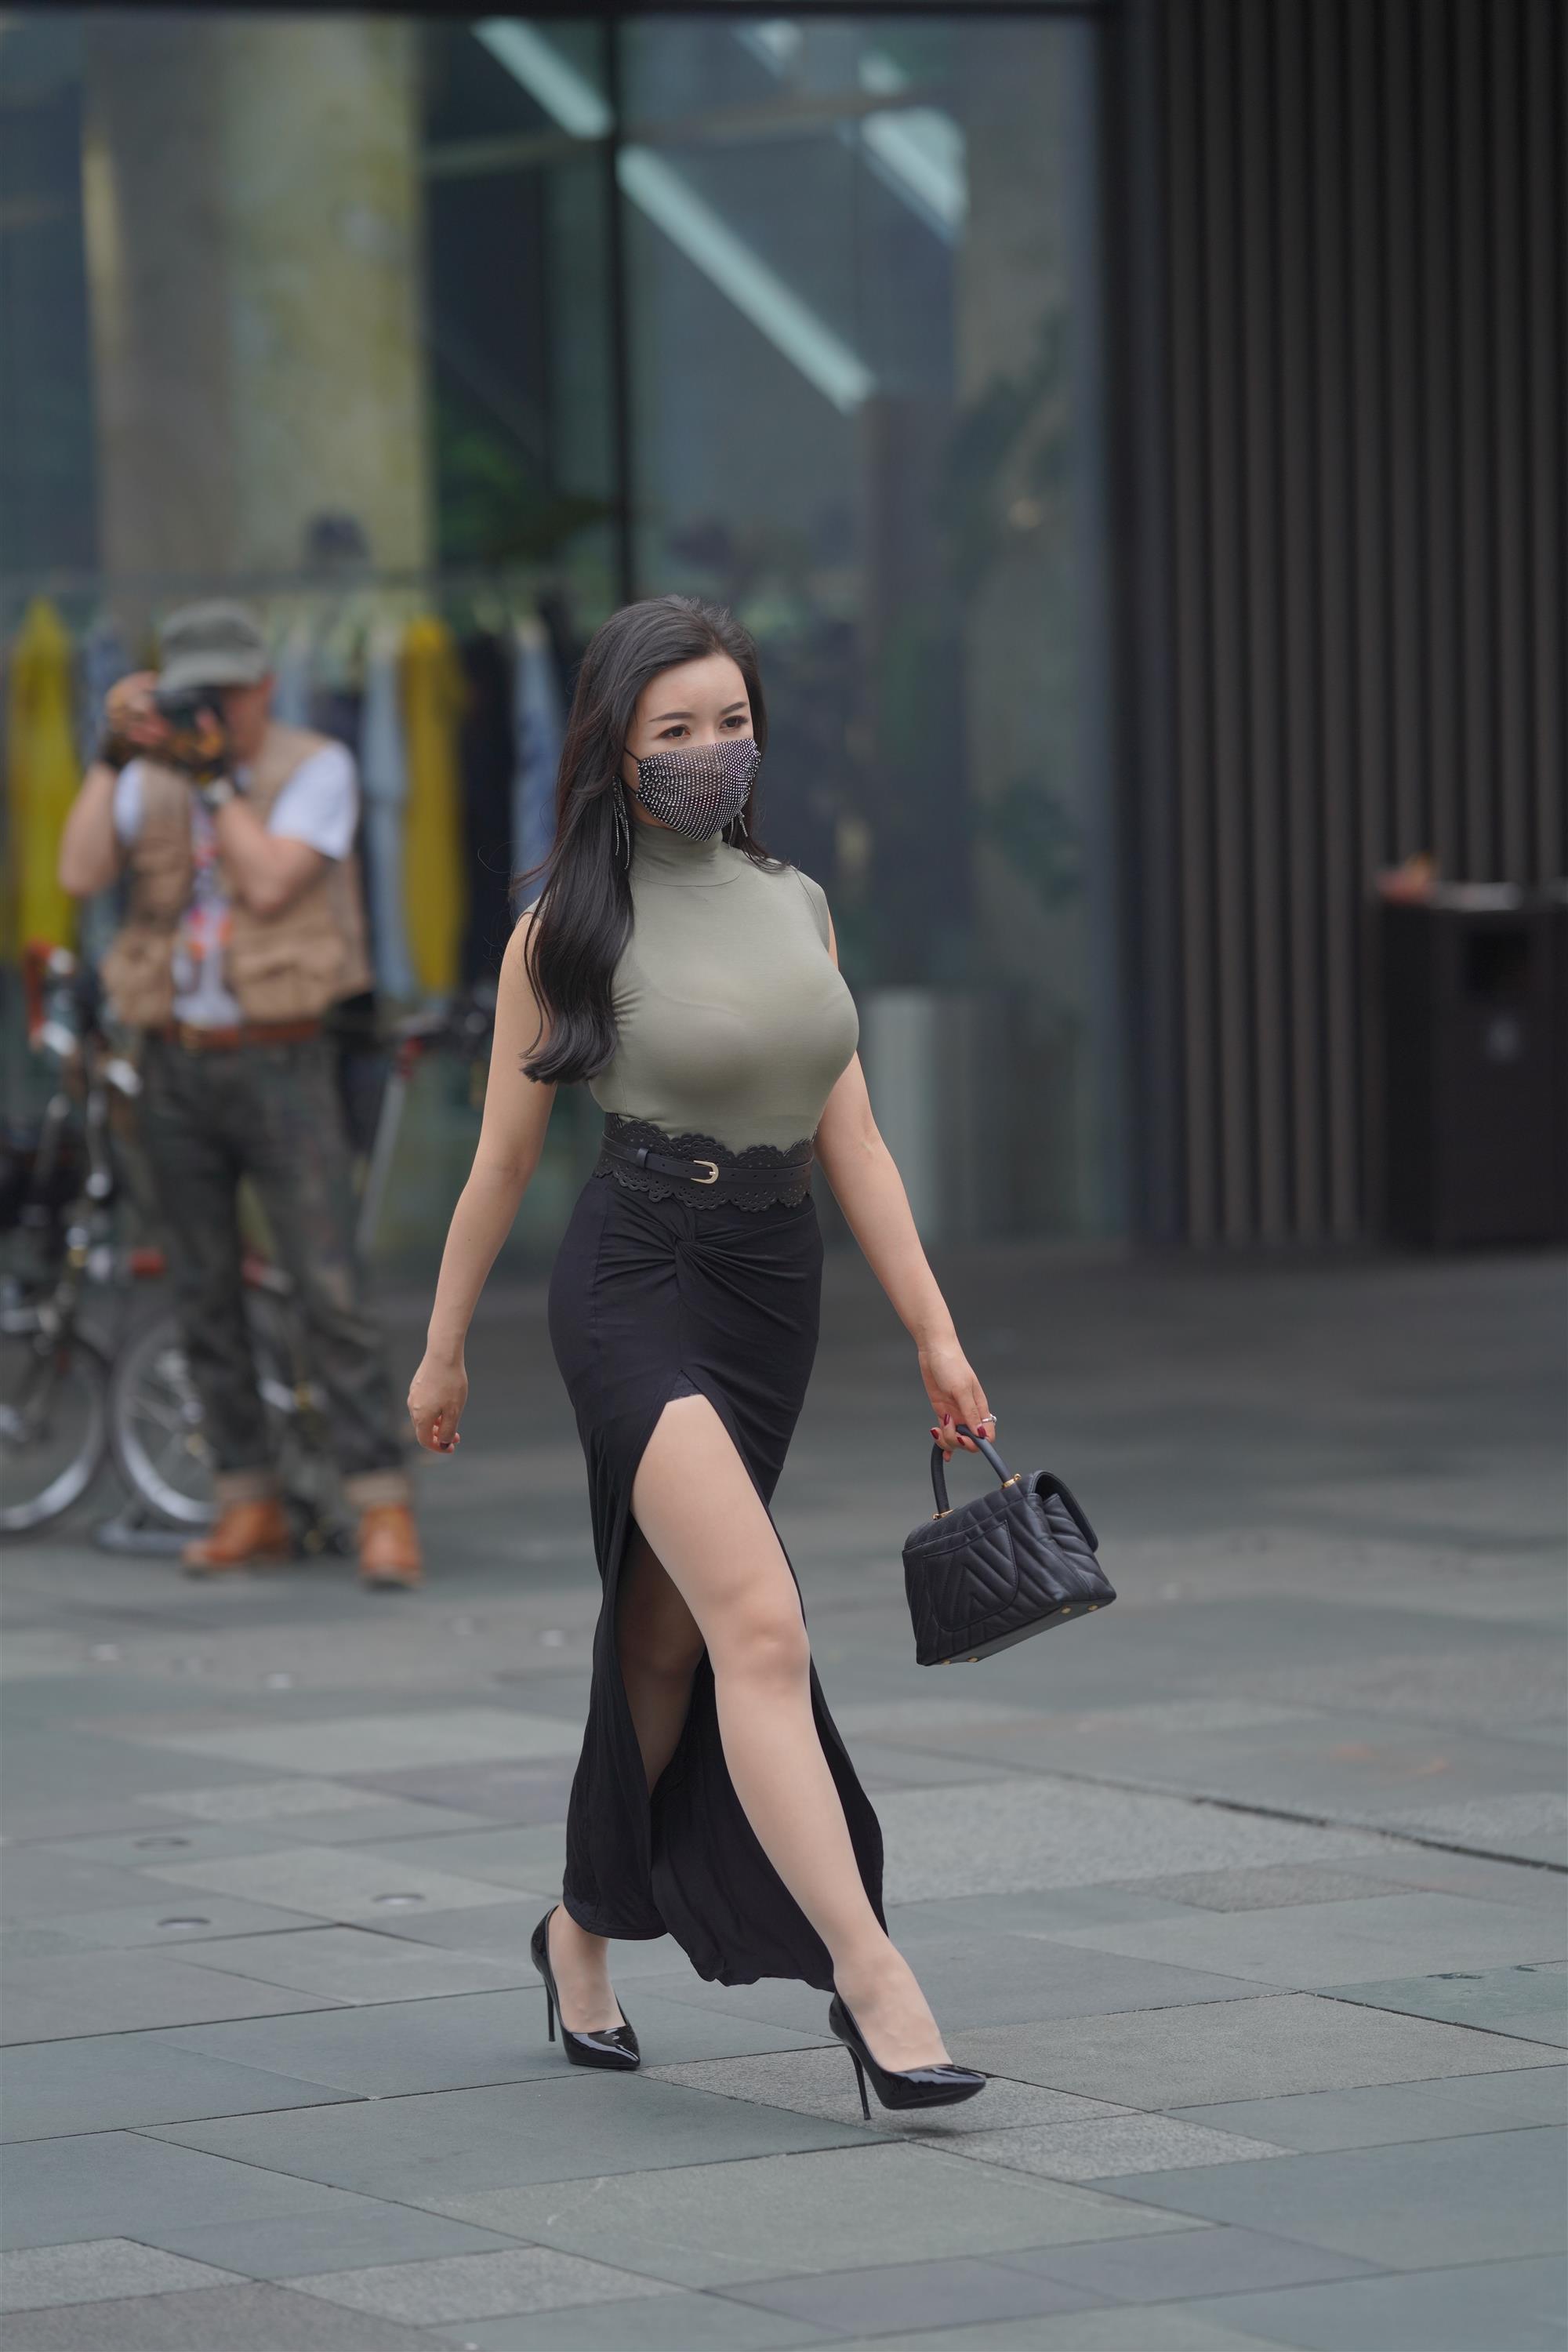 Street 欣儿 Long black skirt - 105.jpg